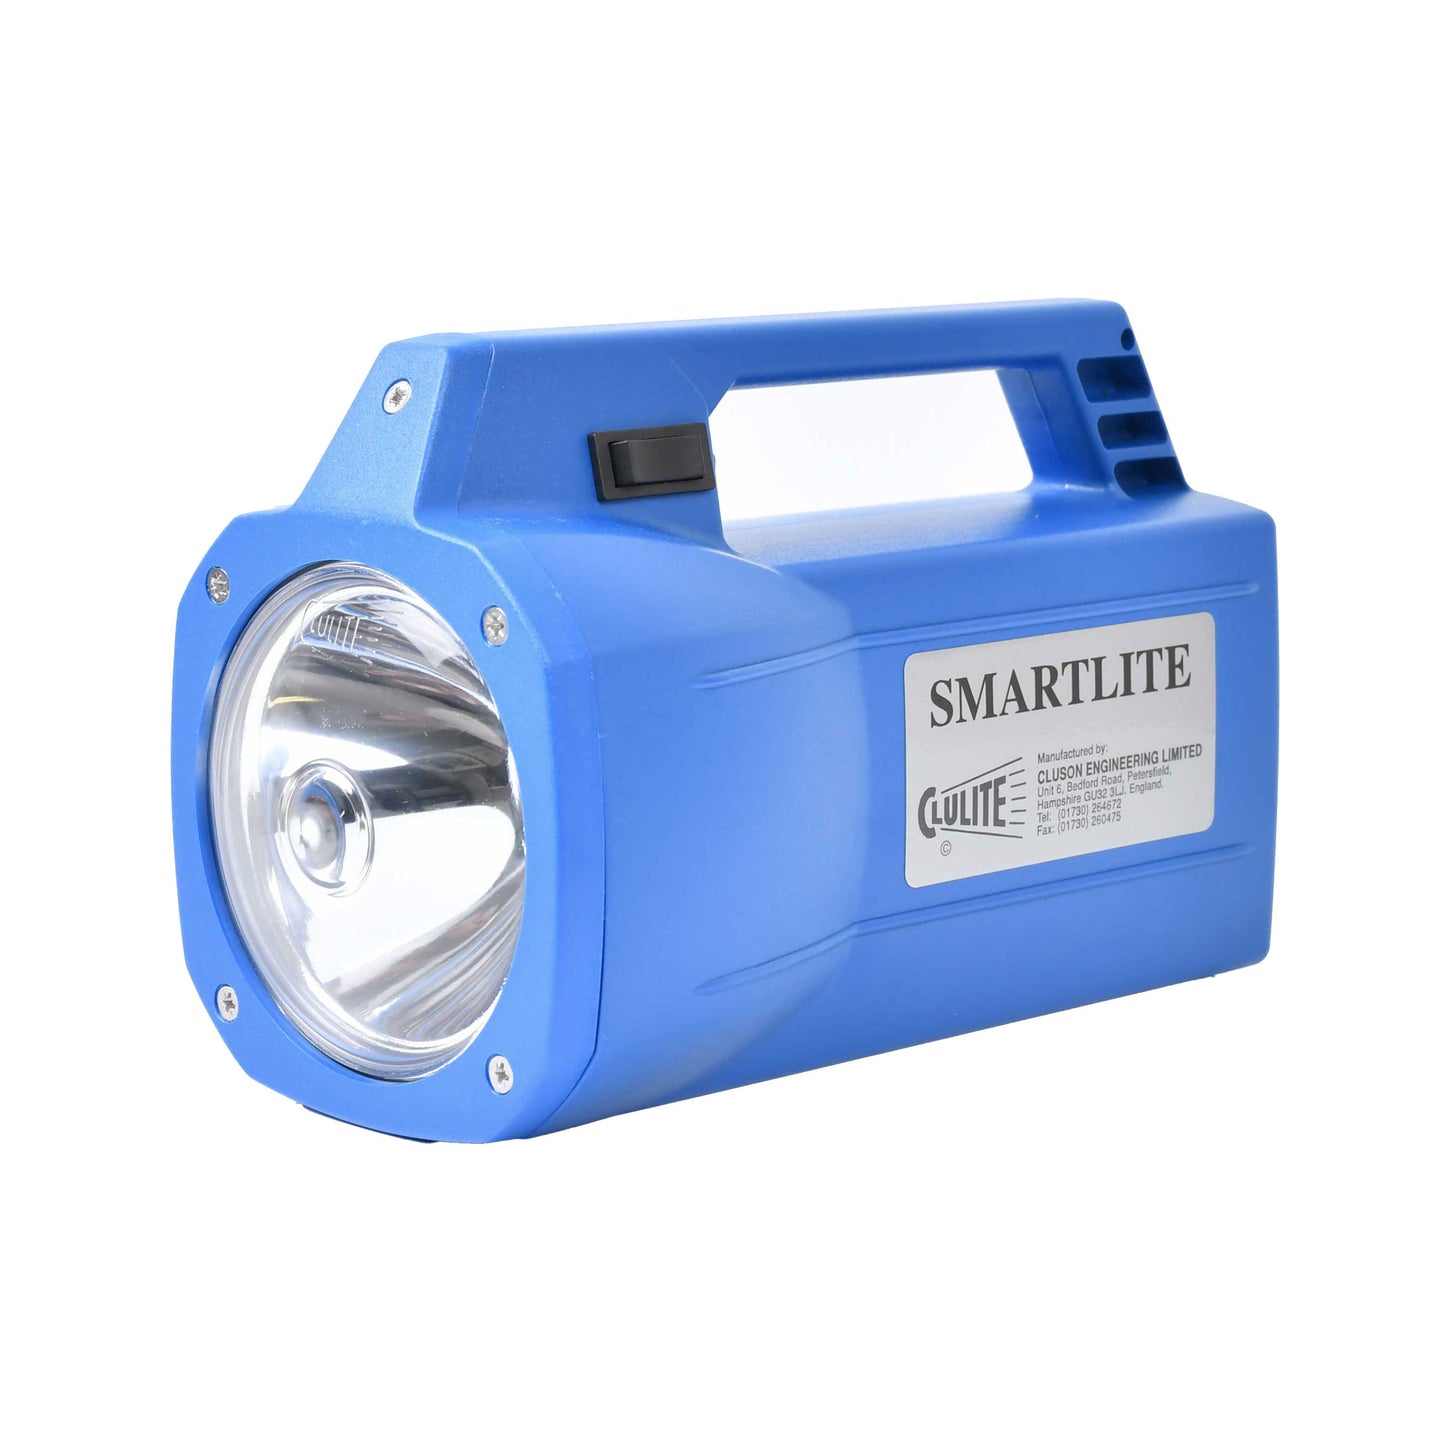 Smartlite LED SLA 12v 7ah